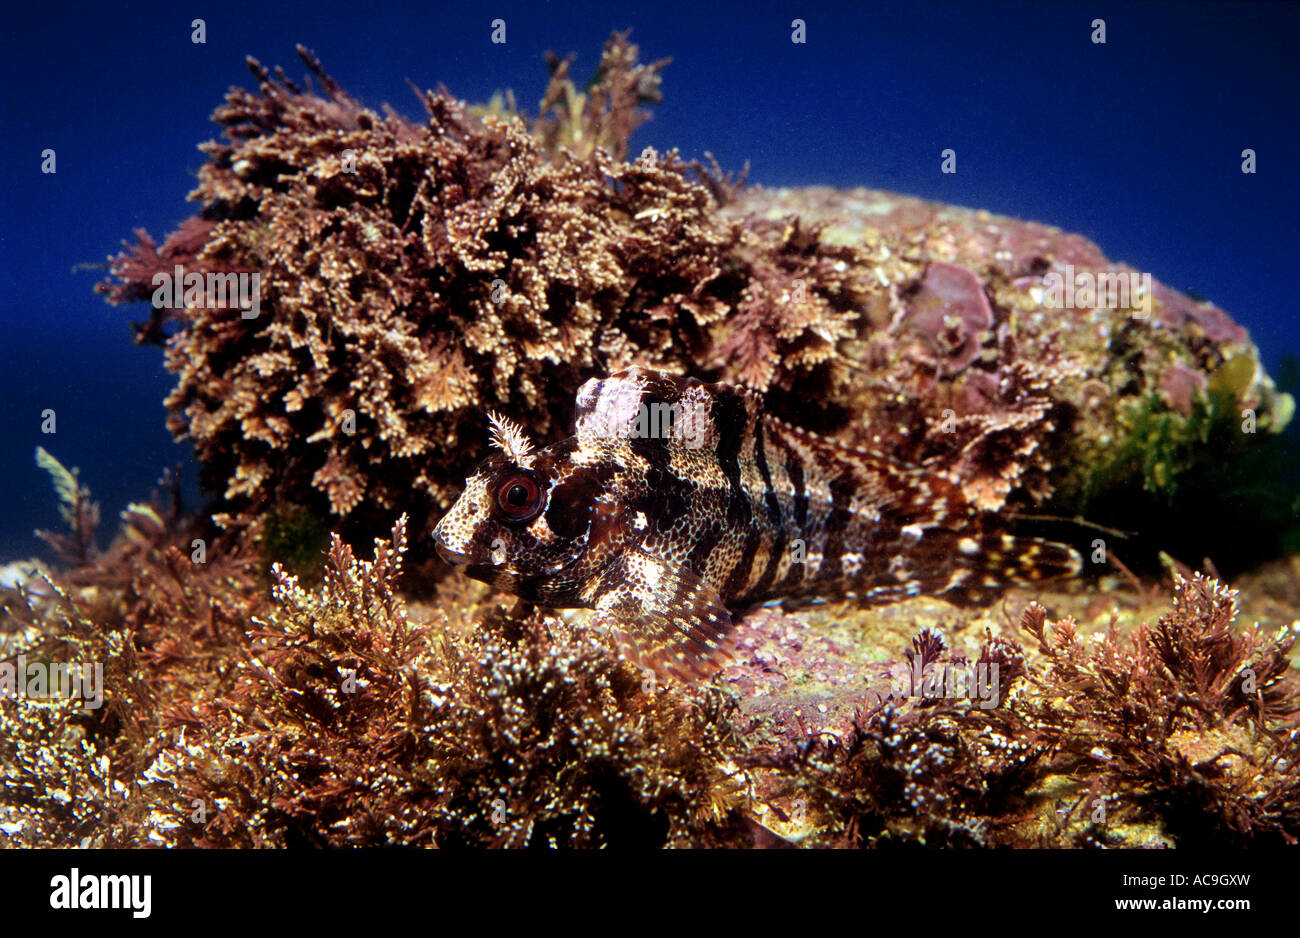 Tompot blenny camouflaged on seabed Blennius gattorugine Mediterranean Stock Photo